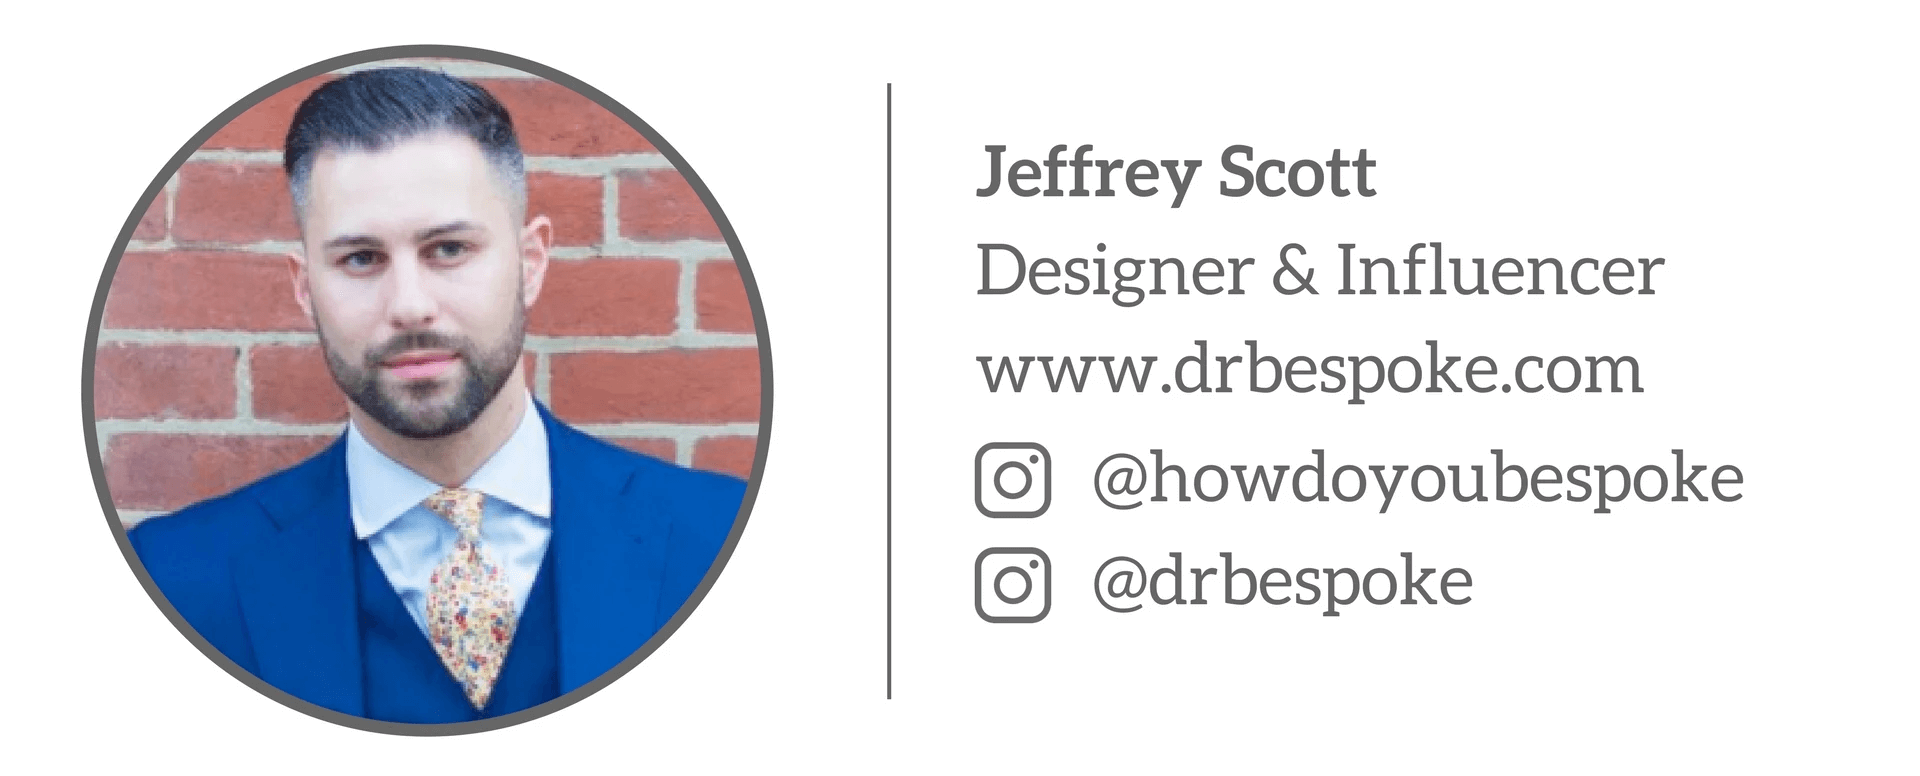 Jeffrey Scott - Designer and Influence “Chuyên thực hiện các thiết kế bespoke, tôi có kha khá những lời khuyên dành cho bạn đấy!”